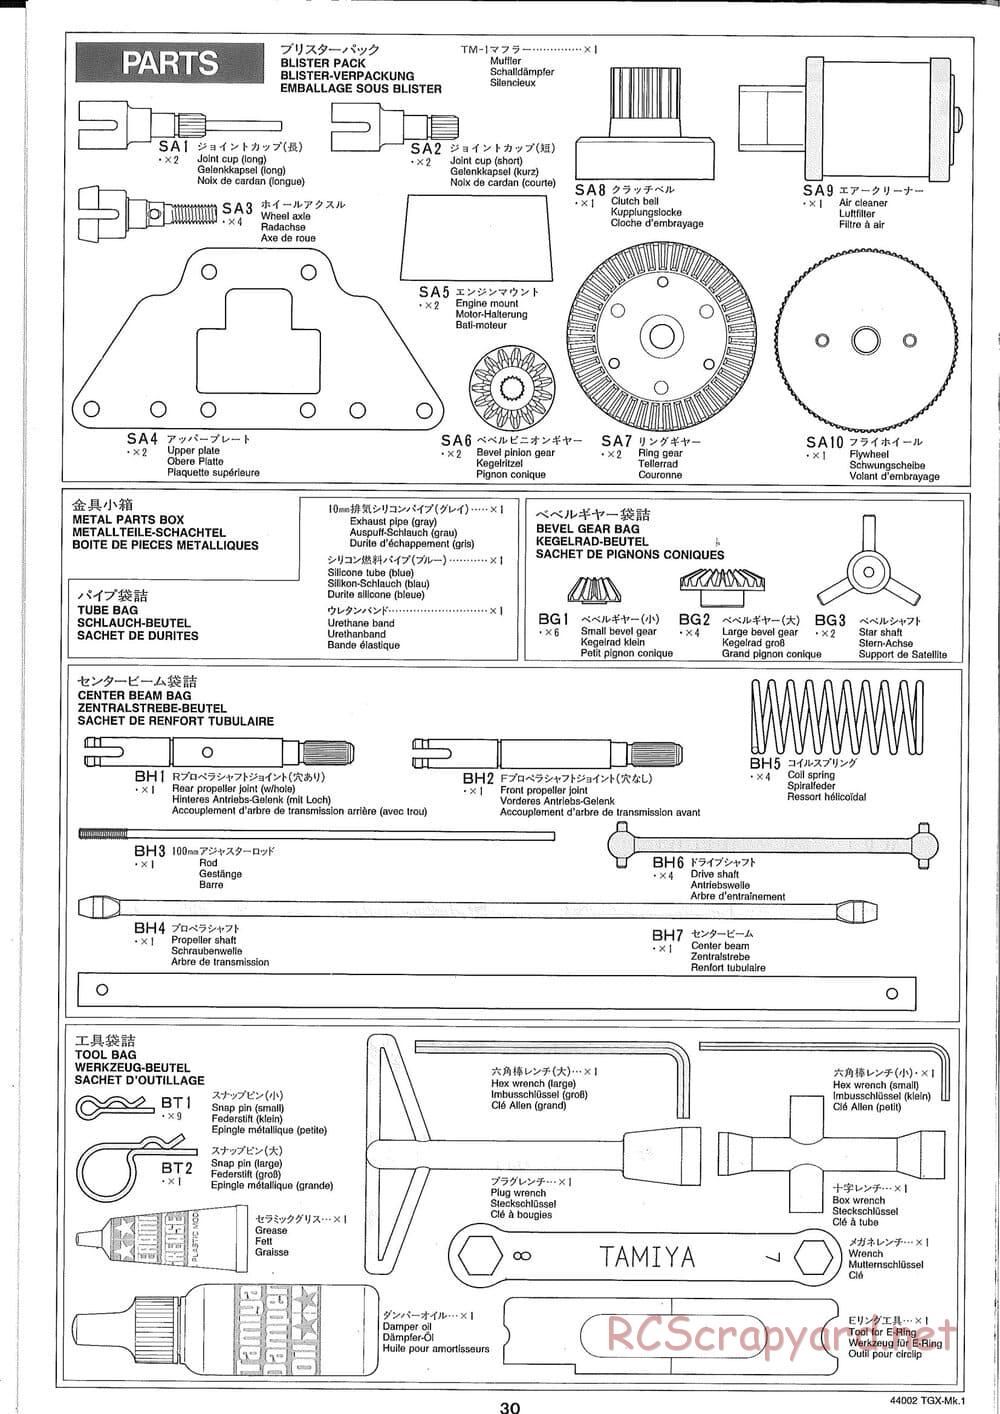 Tamiya - TGX Mk.1 TS Chassis Chassis - Manual - Page 30